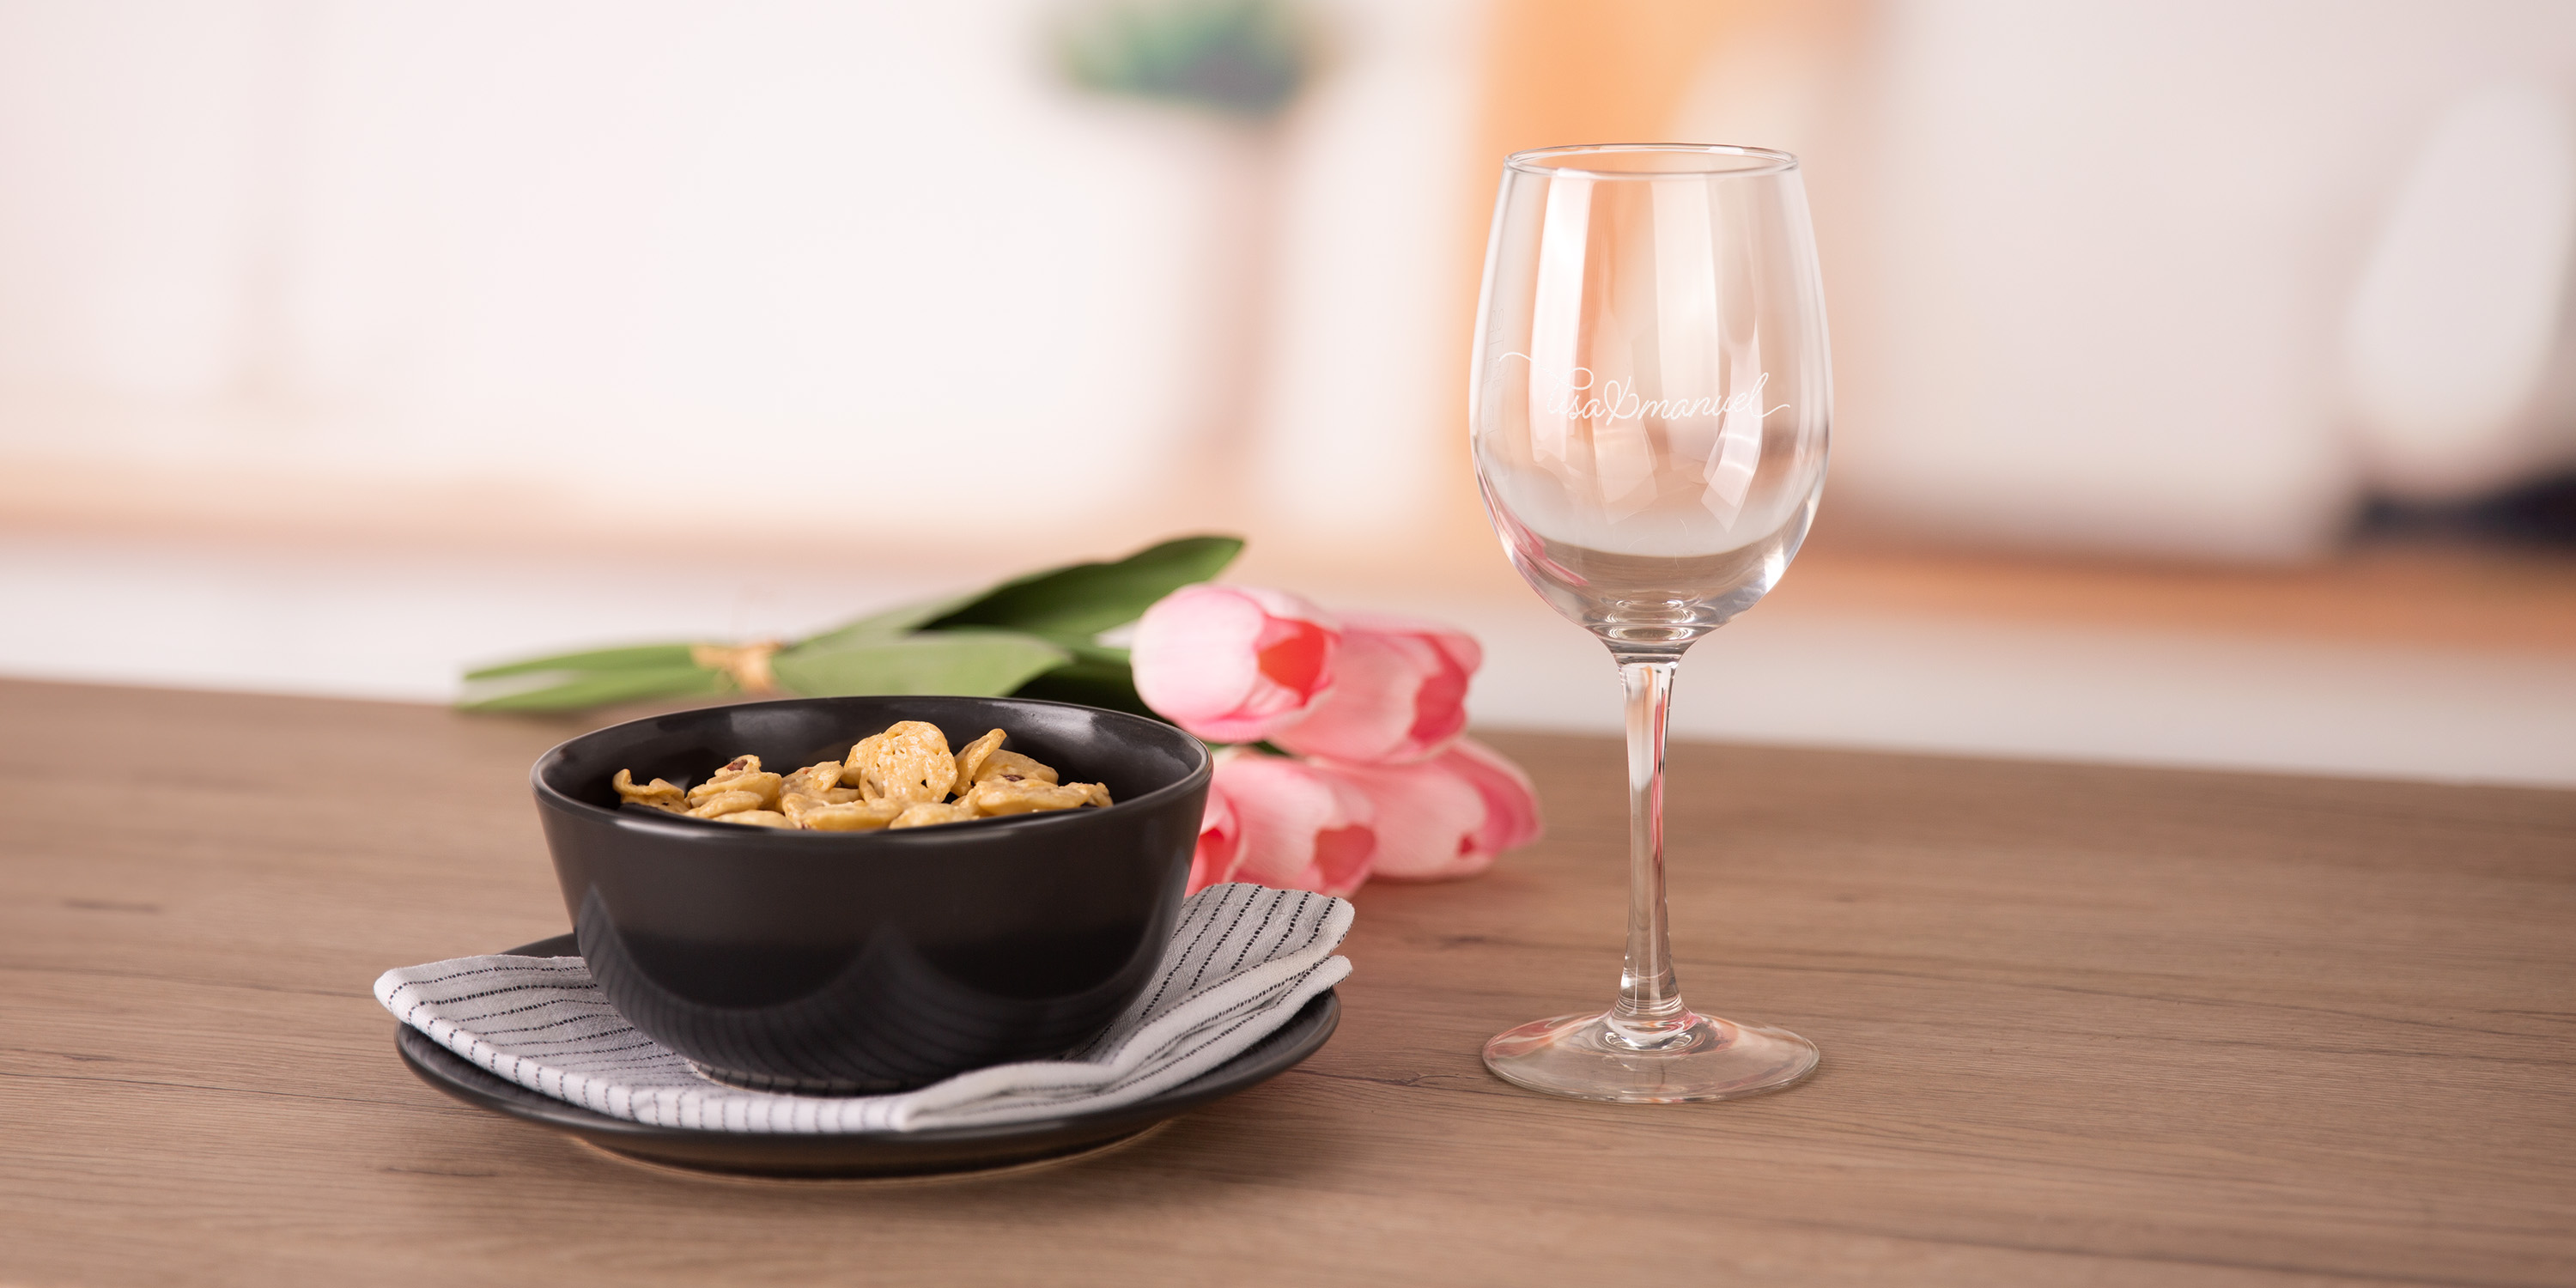 Ein Weinglas neben einer Schüssel auf einem Tisch